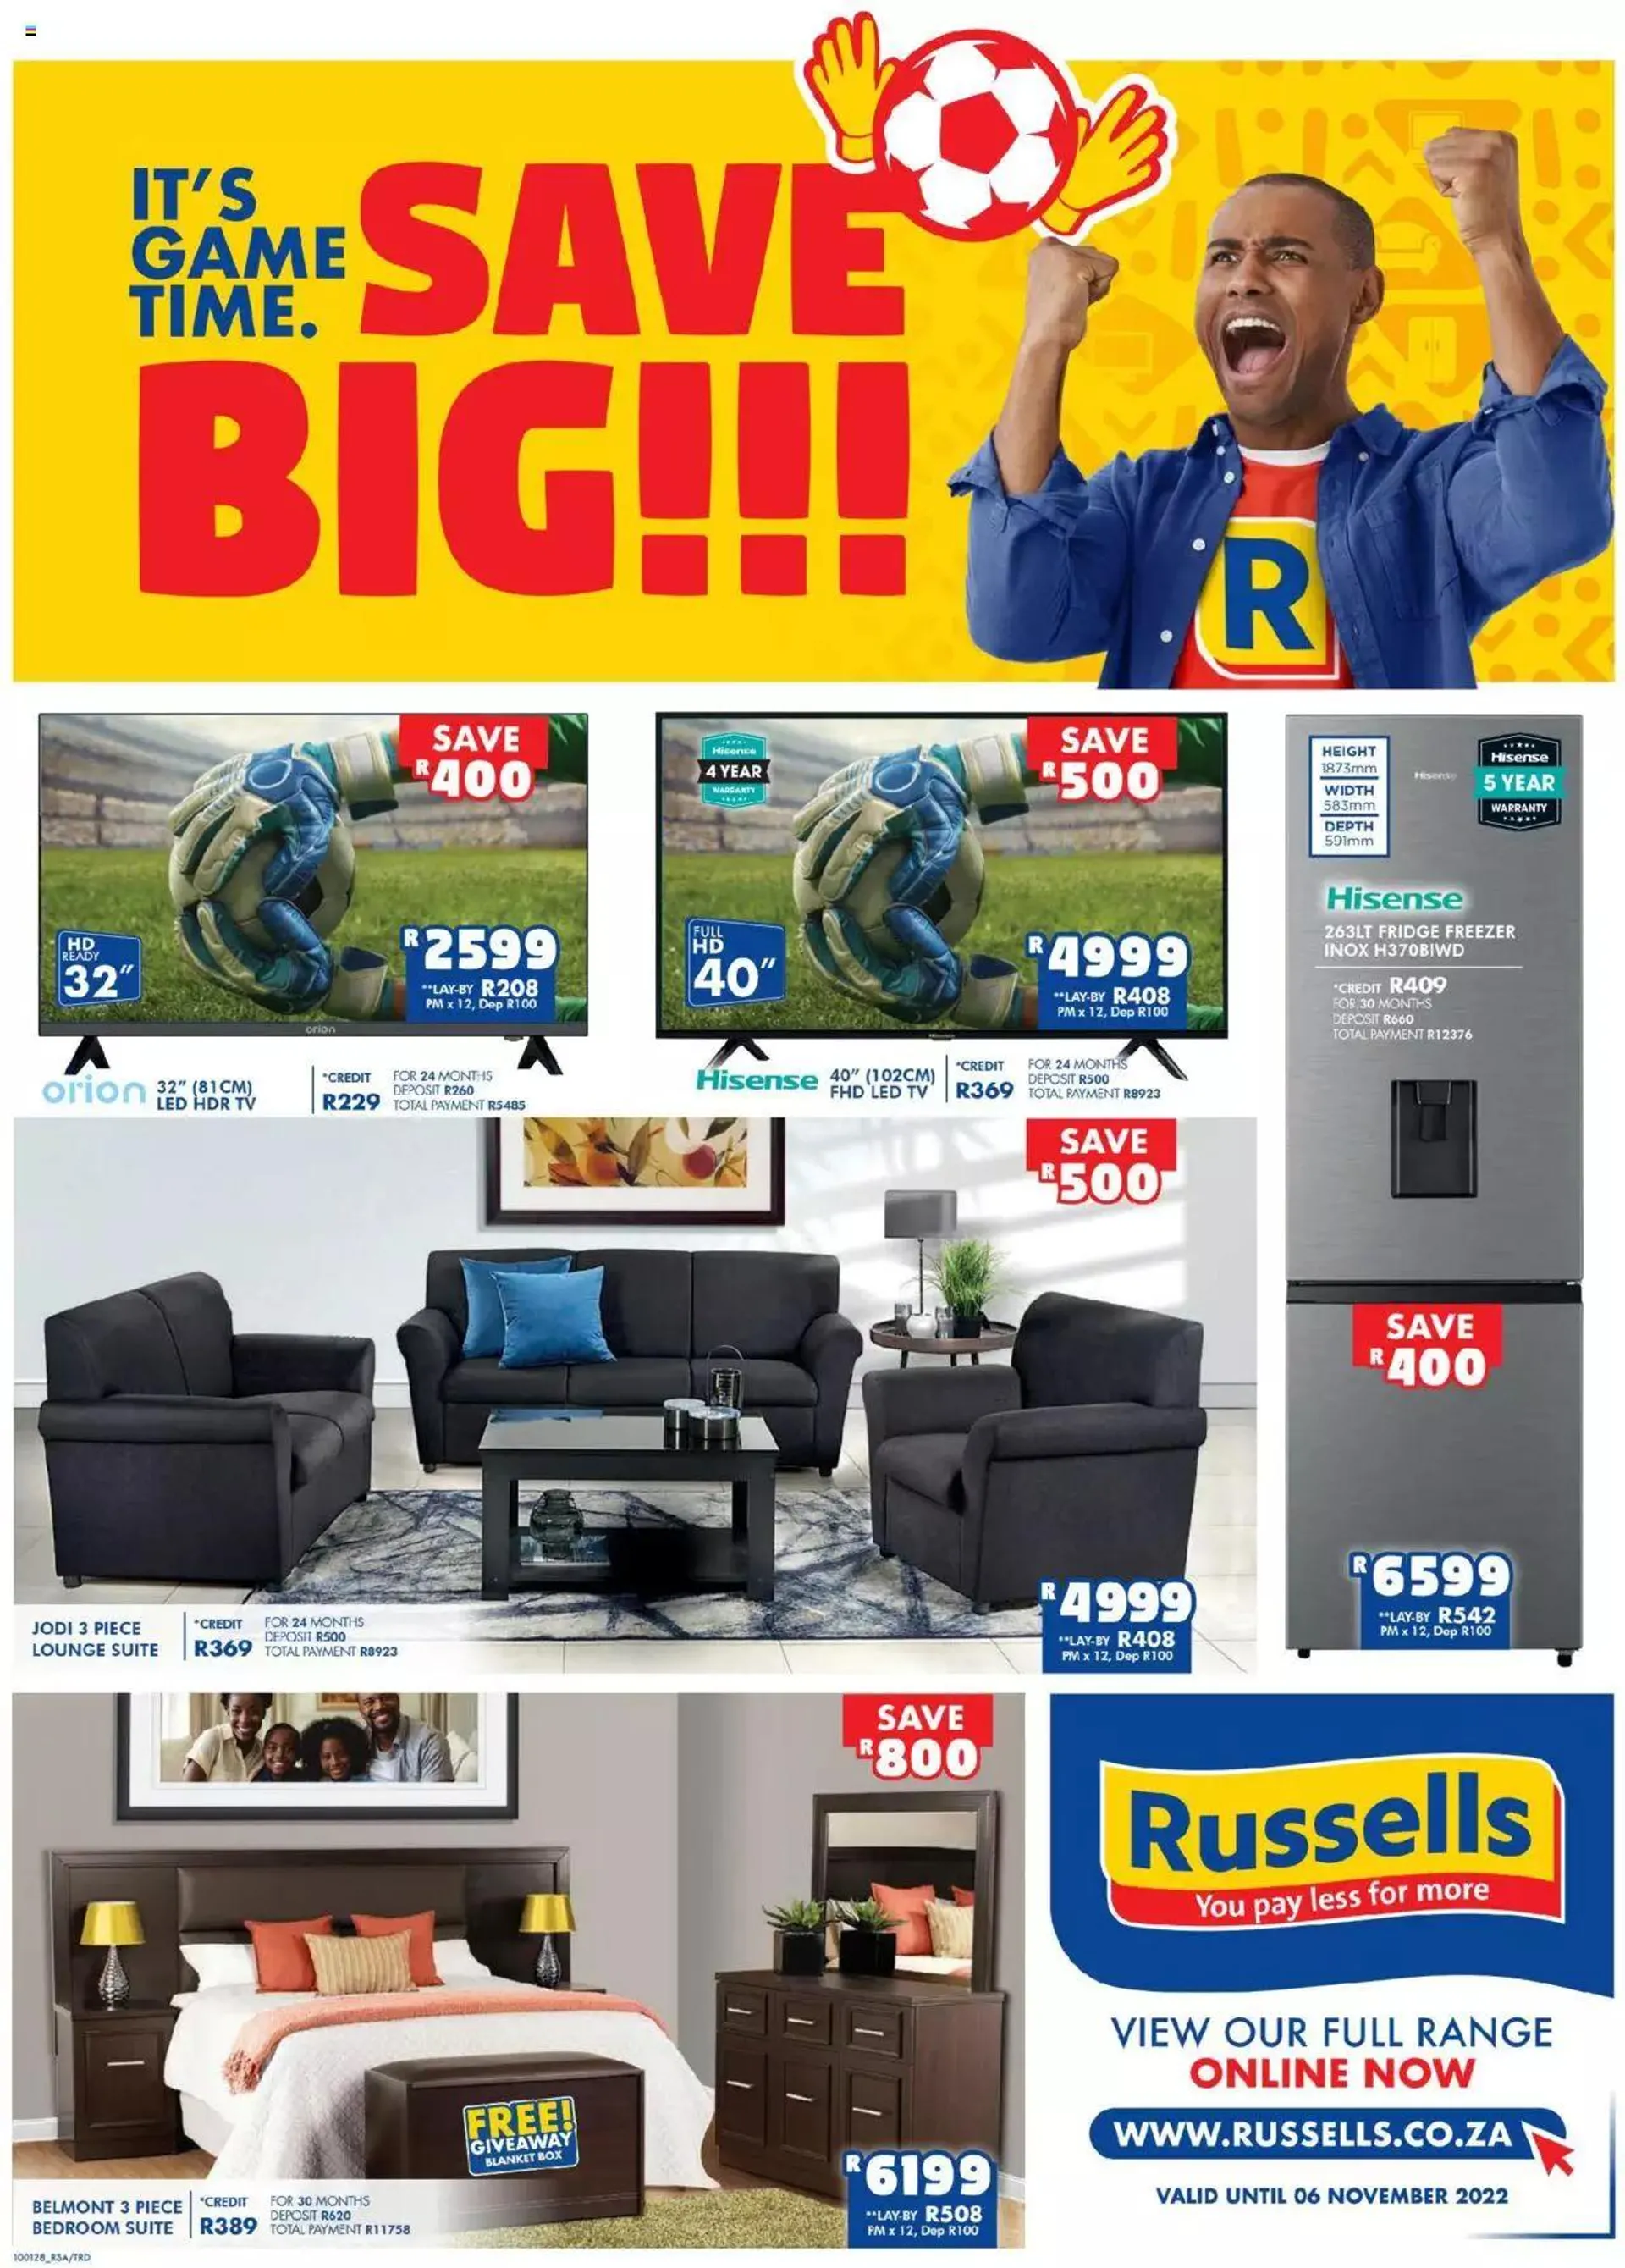 Russells - Specials - 0